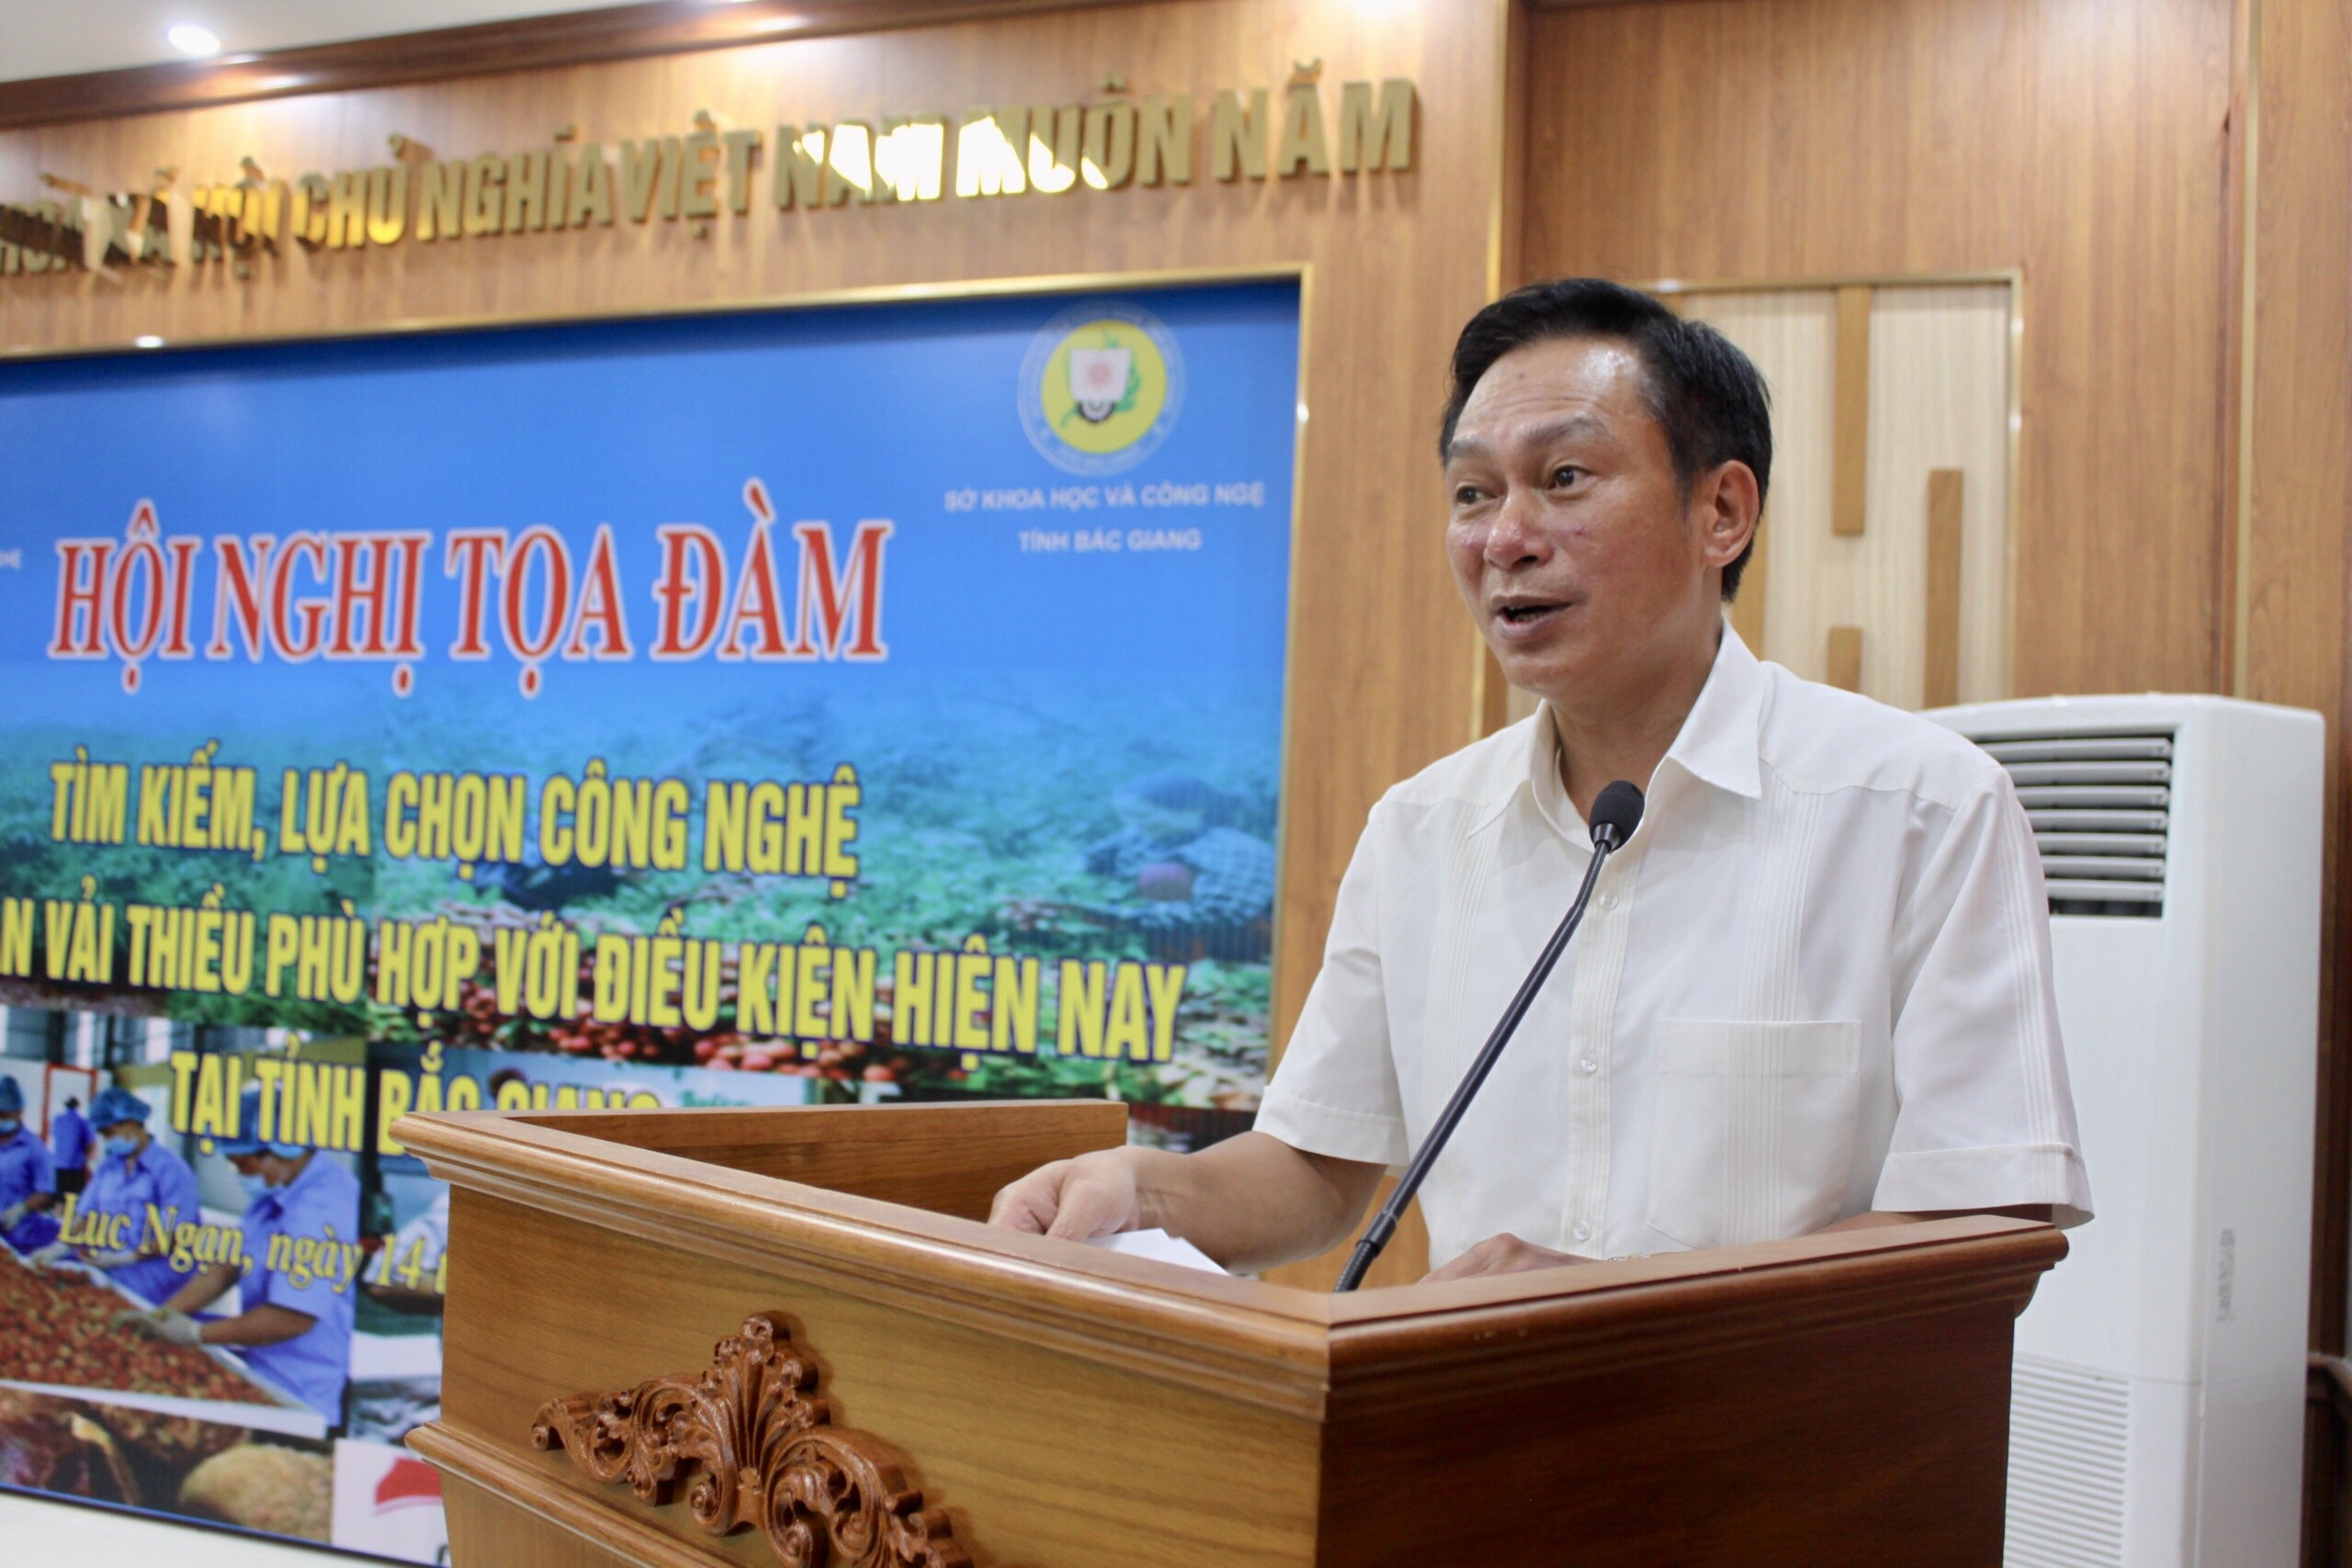 Hội nghị về các Công nghệ bảo quản vải thiều tại tỉnh Bắc Giang